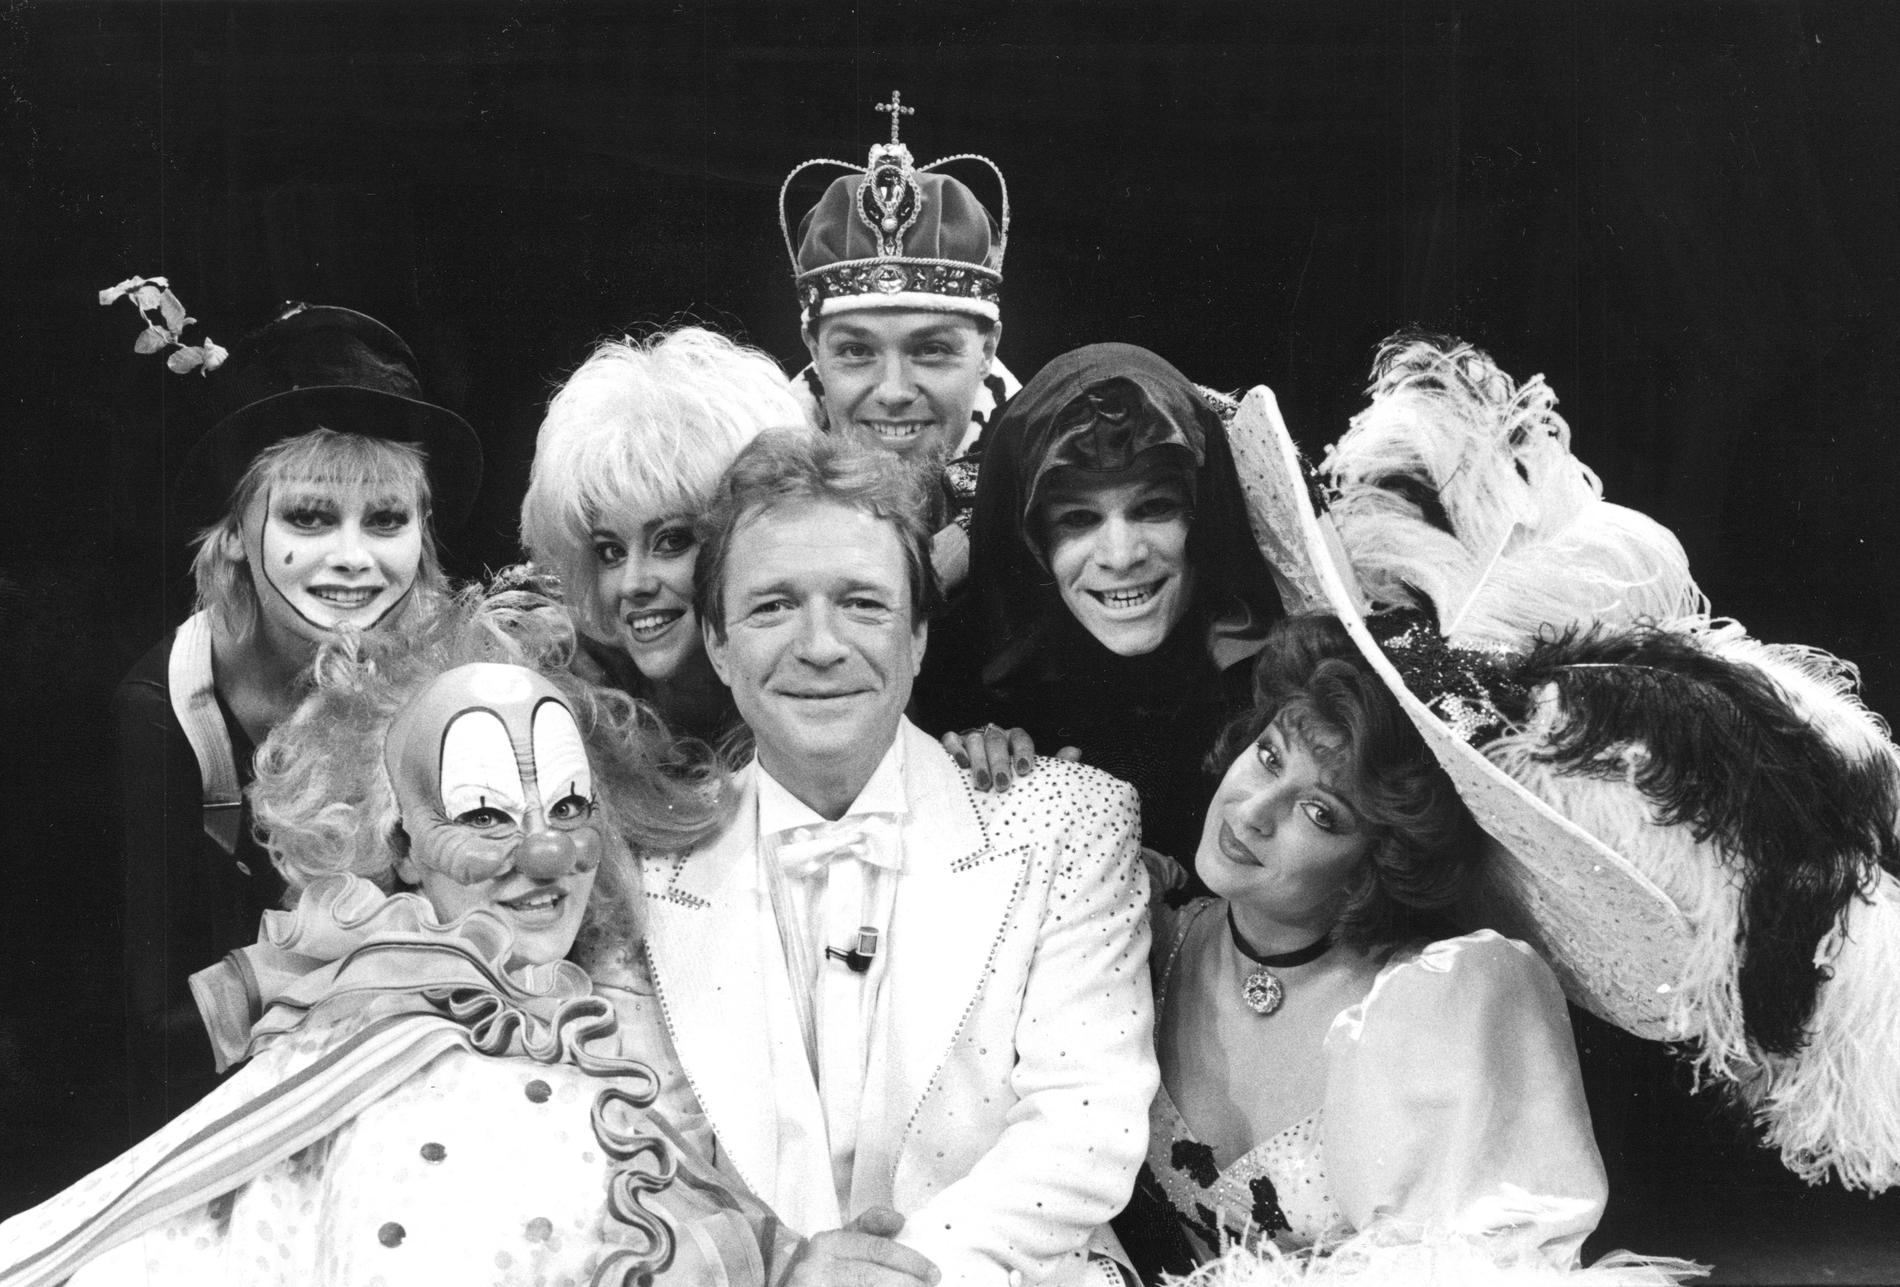 Från musikalen ”Skål” på Maximteatern 1986. I mitten ser vi Brasse Brännström och till höger om honom Thomas Hellberg.